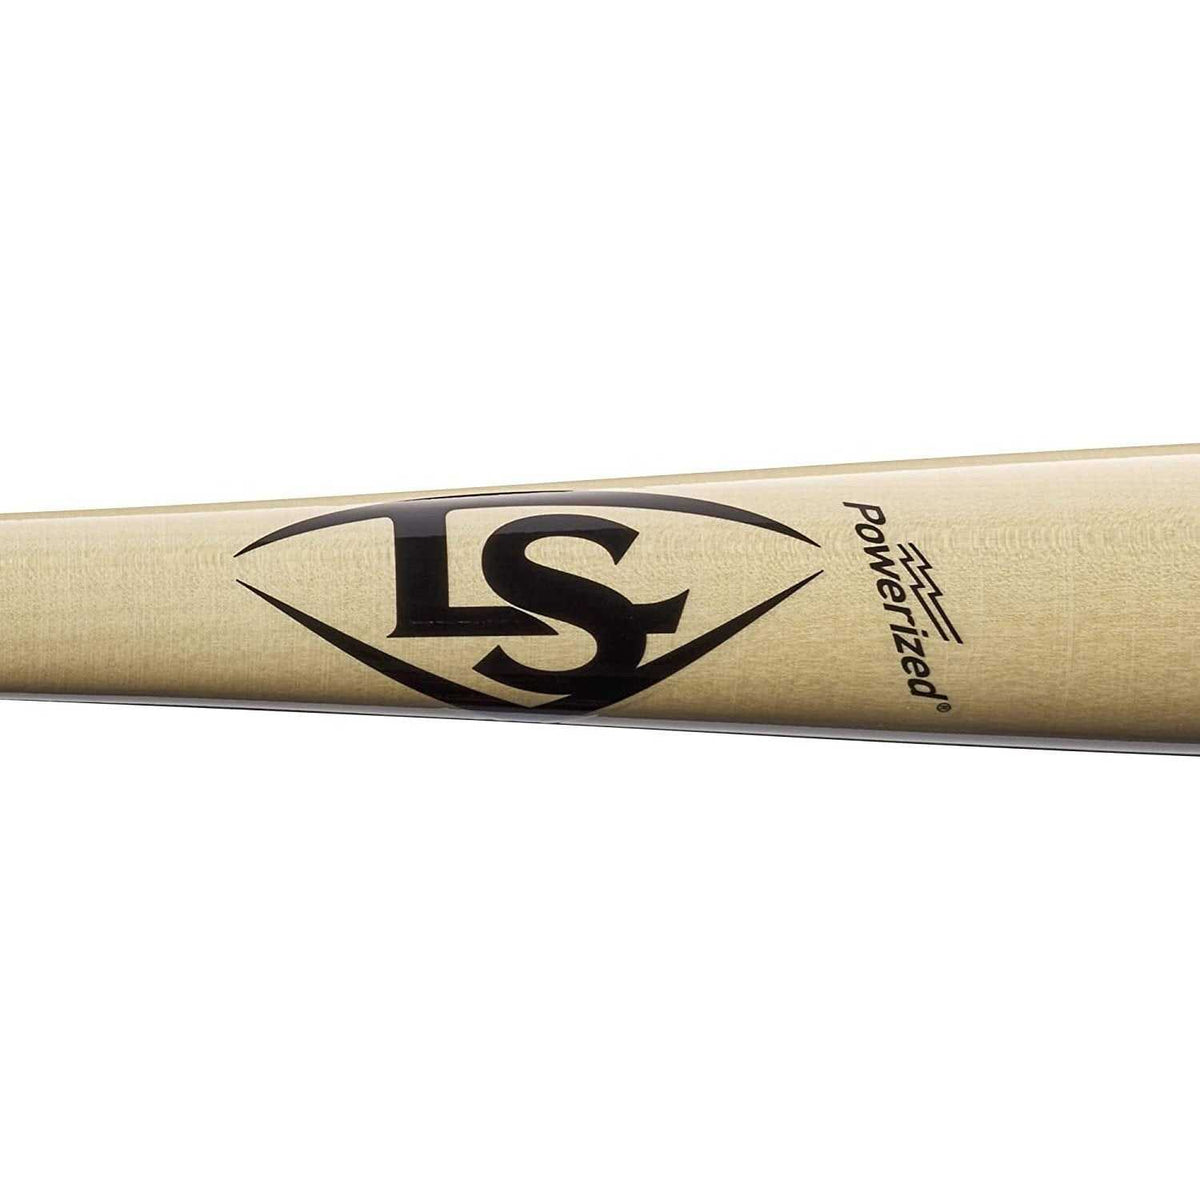 Louisville Slugger Select M9 C271 Maple Bat - Natural - HIT A Double